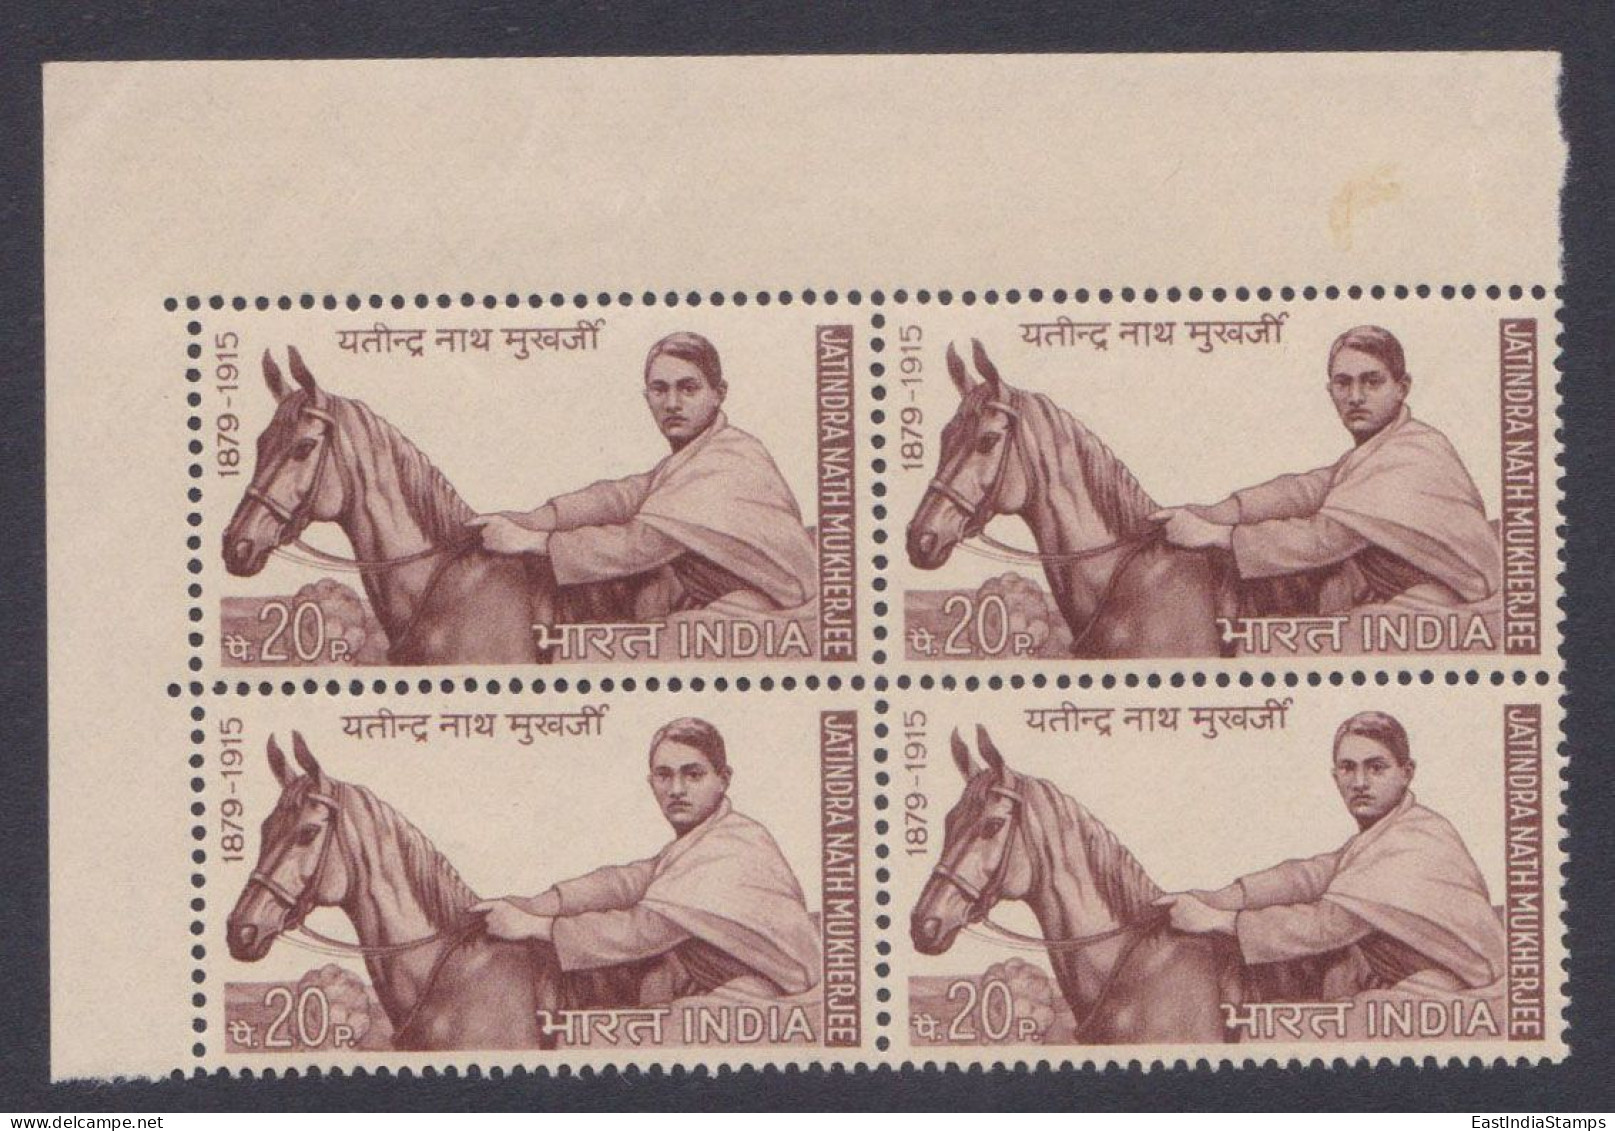 Inde India 1970 MNH Jatindra Nath Mukherjee, Bhaga Jatin, Indian Independence Activist, Horse, Horses, Block - Neufs